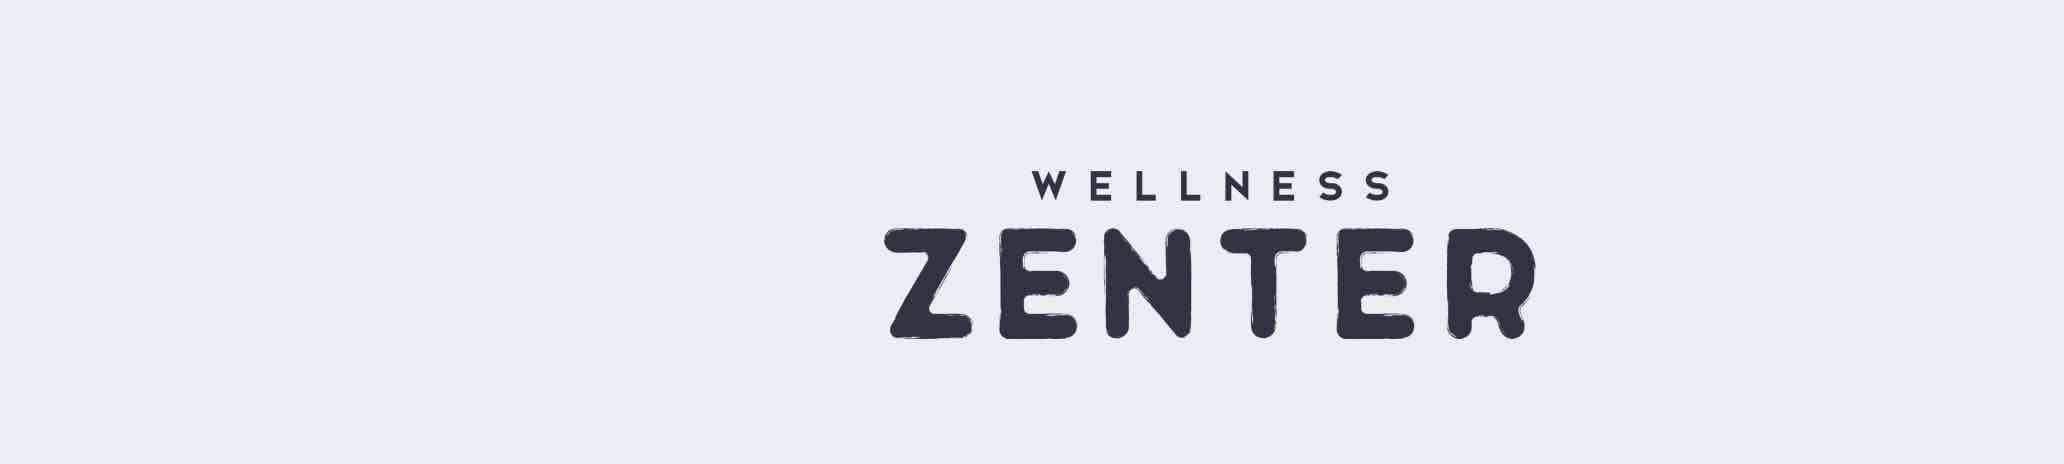 Wellness-Zenter-Banner.